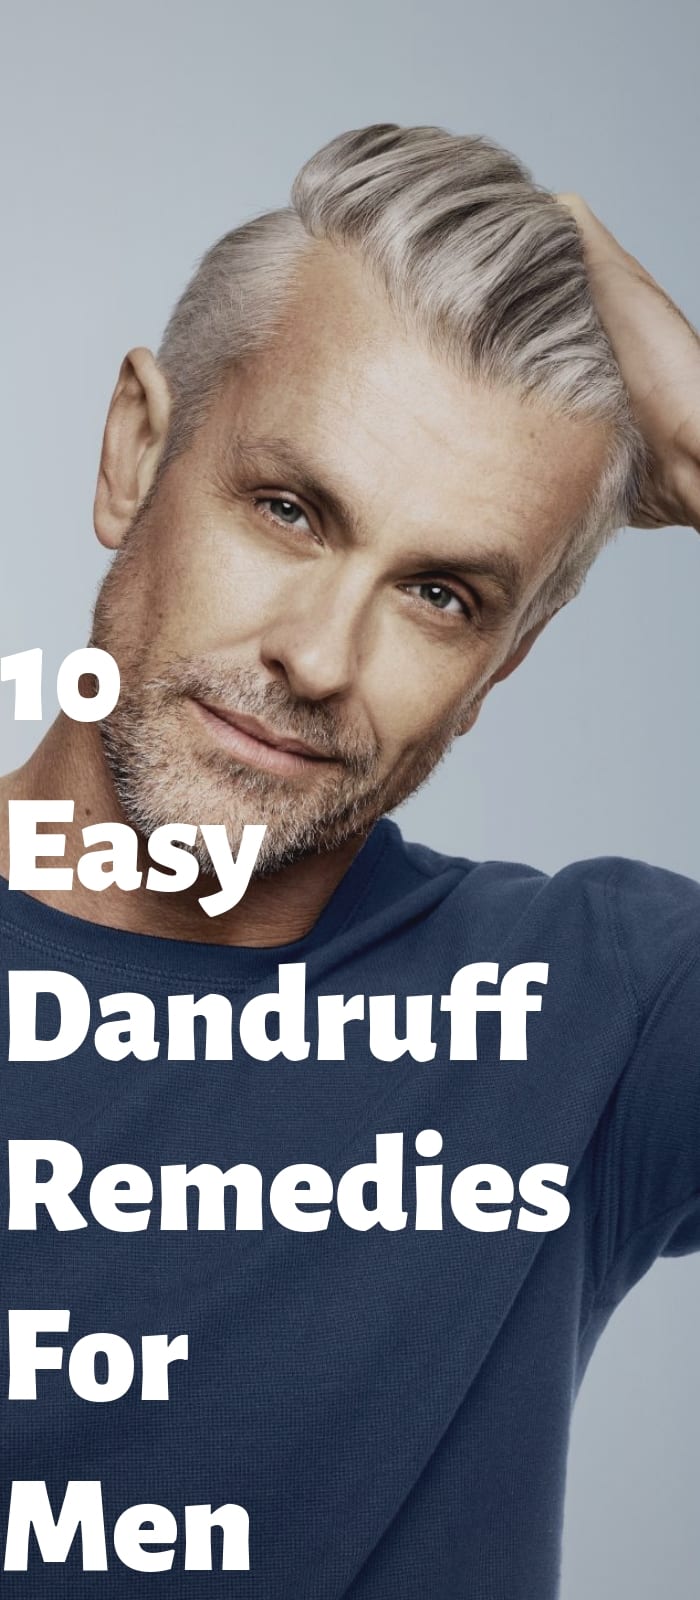 10 Easy Dandruff Remedies For Men (1)